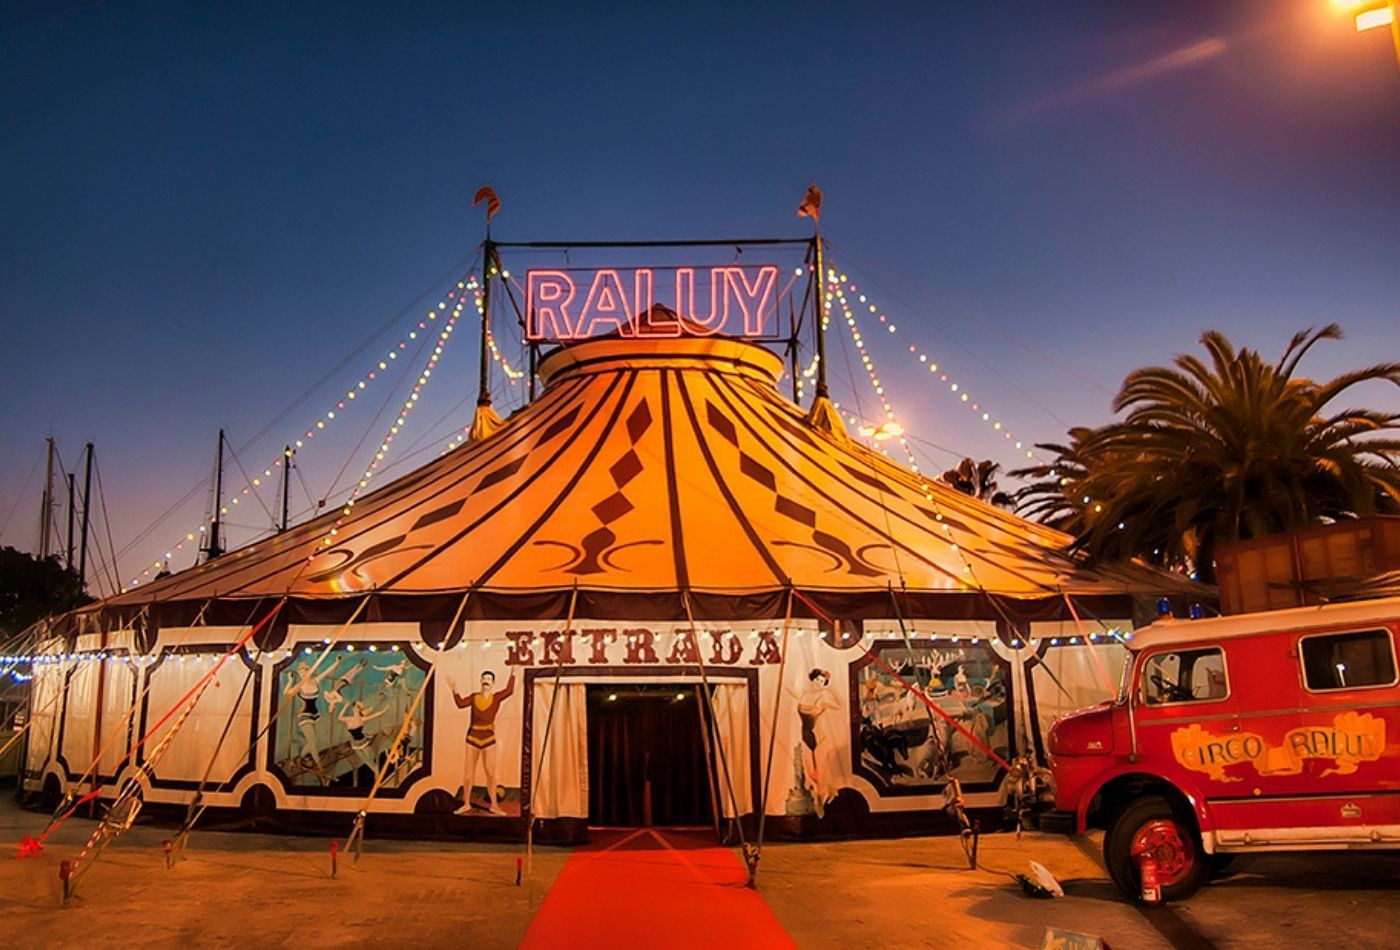 Carpa del Circo Raluy en el Moll de la Fusta de Barcelona / RALUY - Felicia Sabater